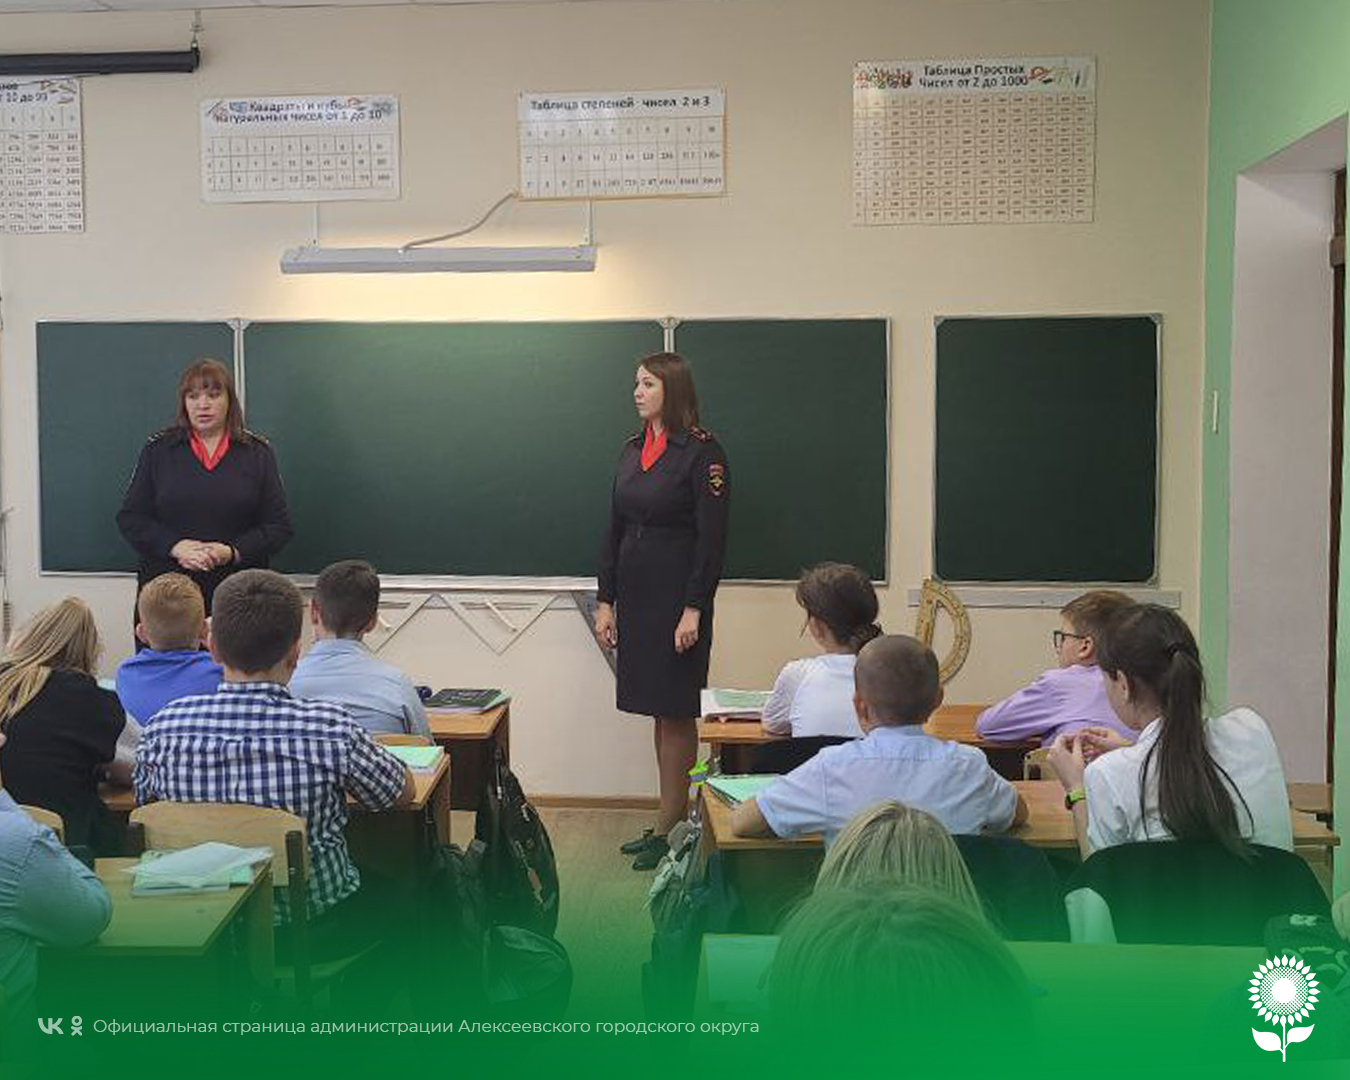 Сотрудники ОМВД России по Алексеевскому городскому округу провели в ОГБОУ «Алексеевская средняя общеобразовательная школа»  урок безопасности.